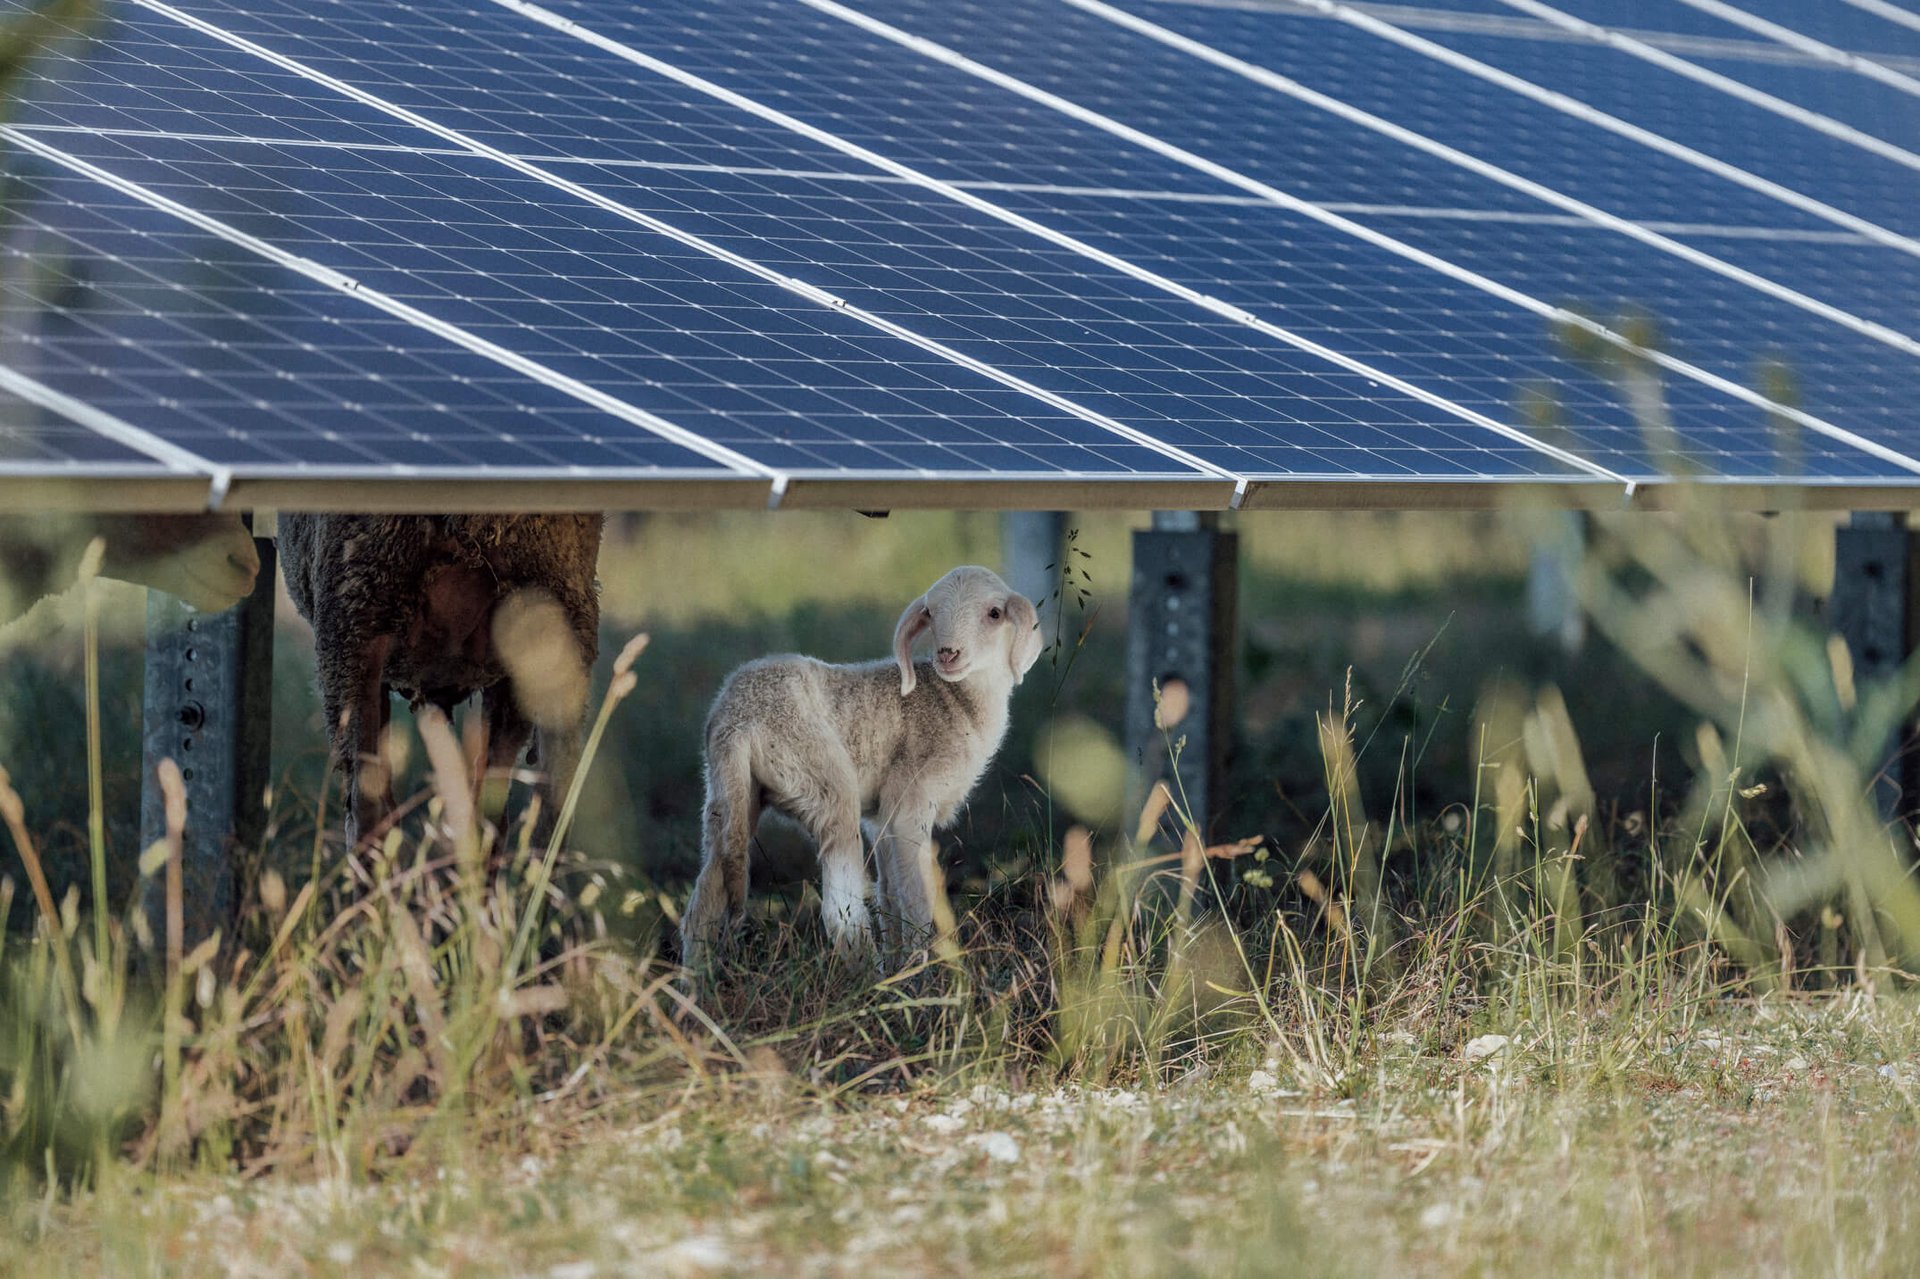 Solarpark Henschleben. Schafe weiden unter den Solarpanels.